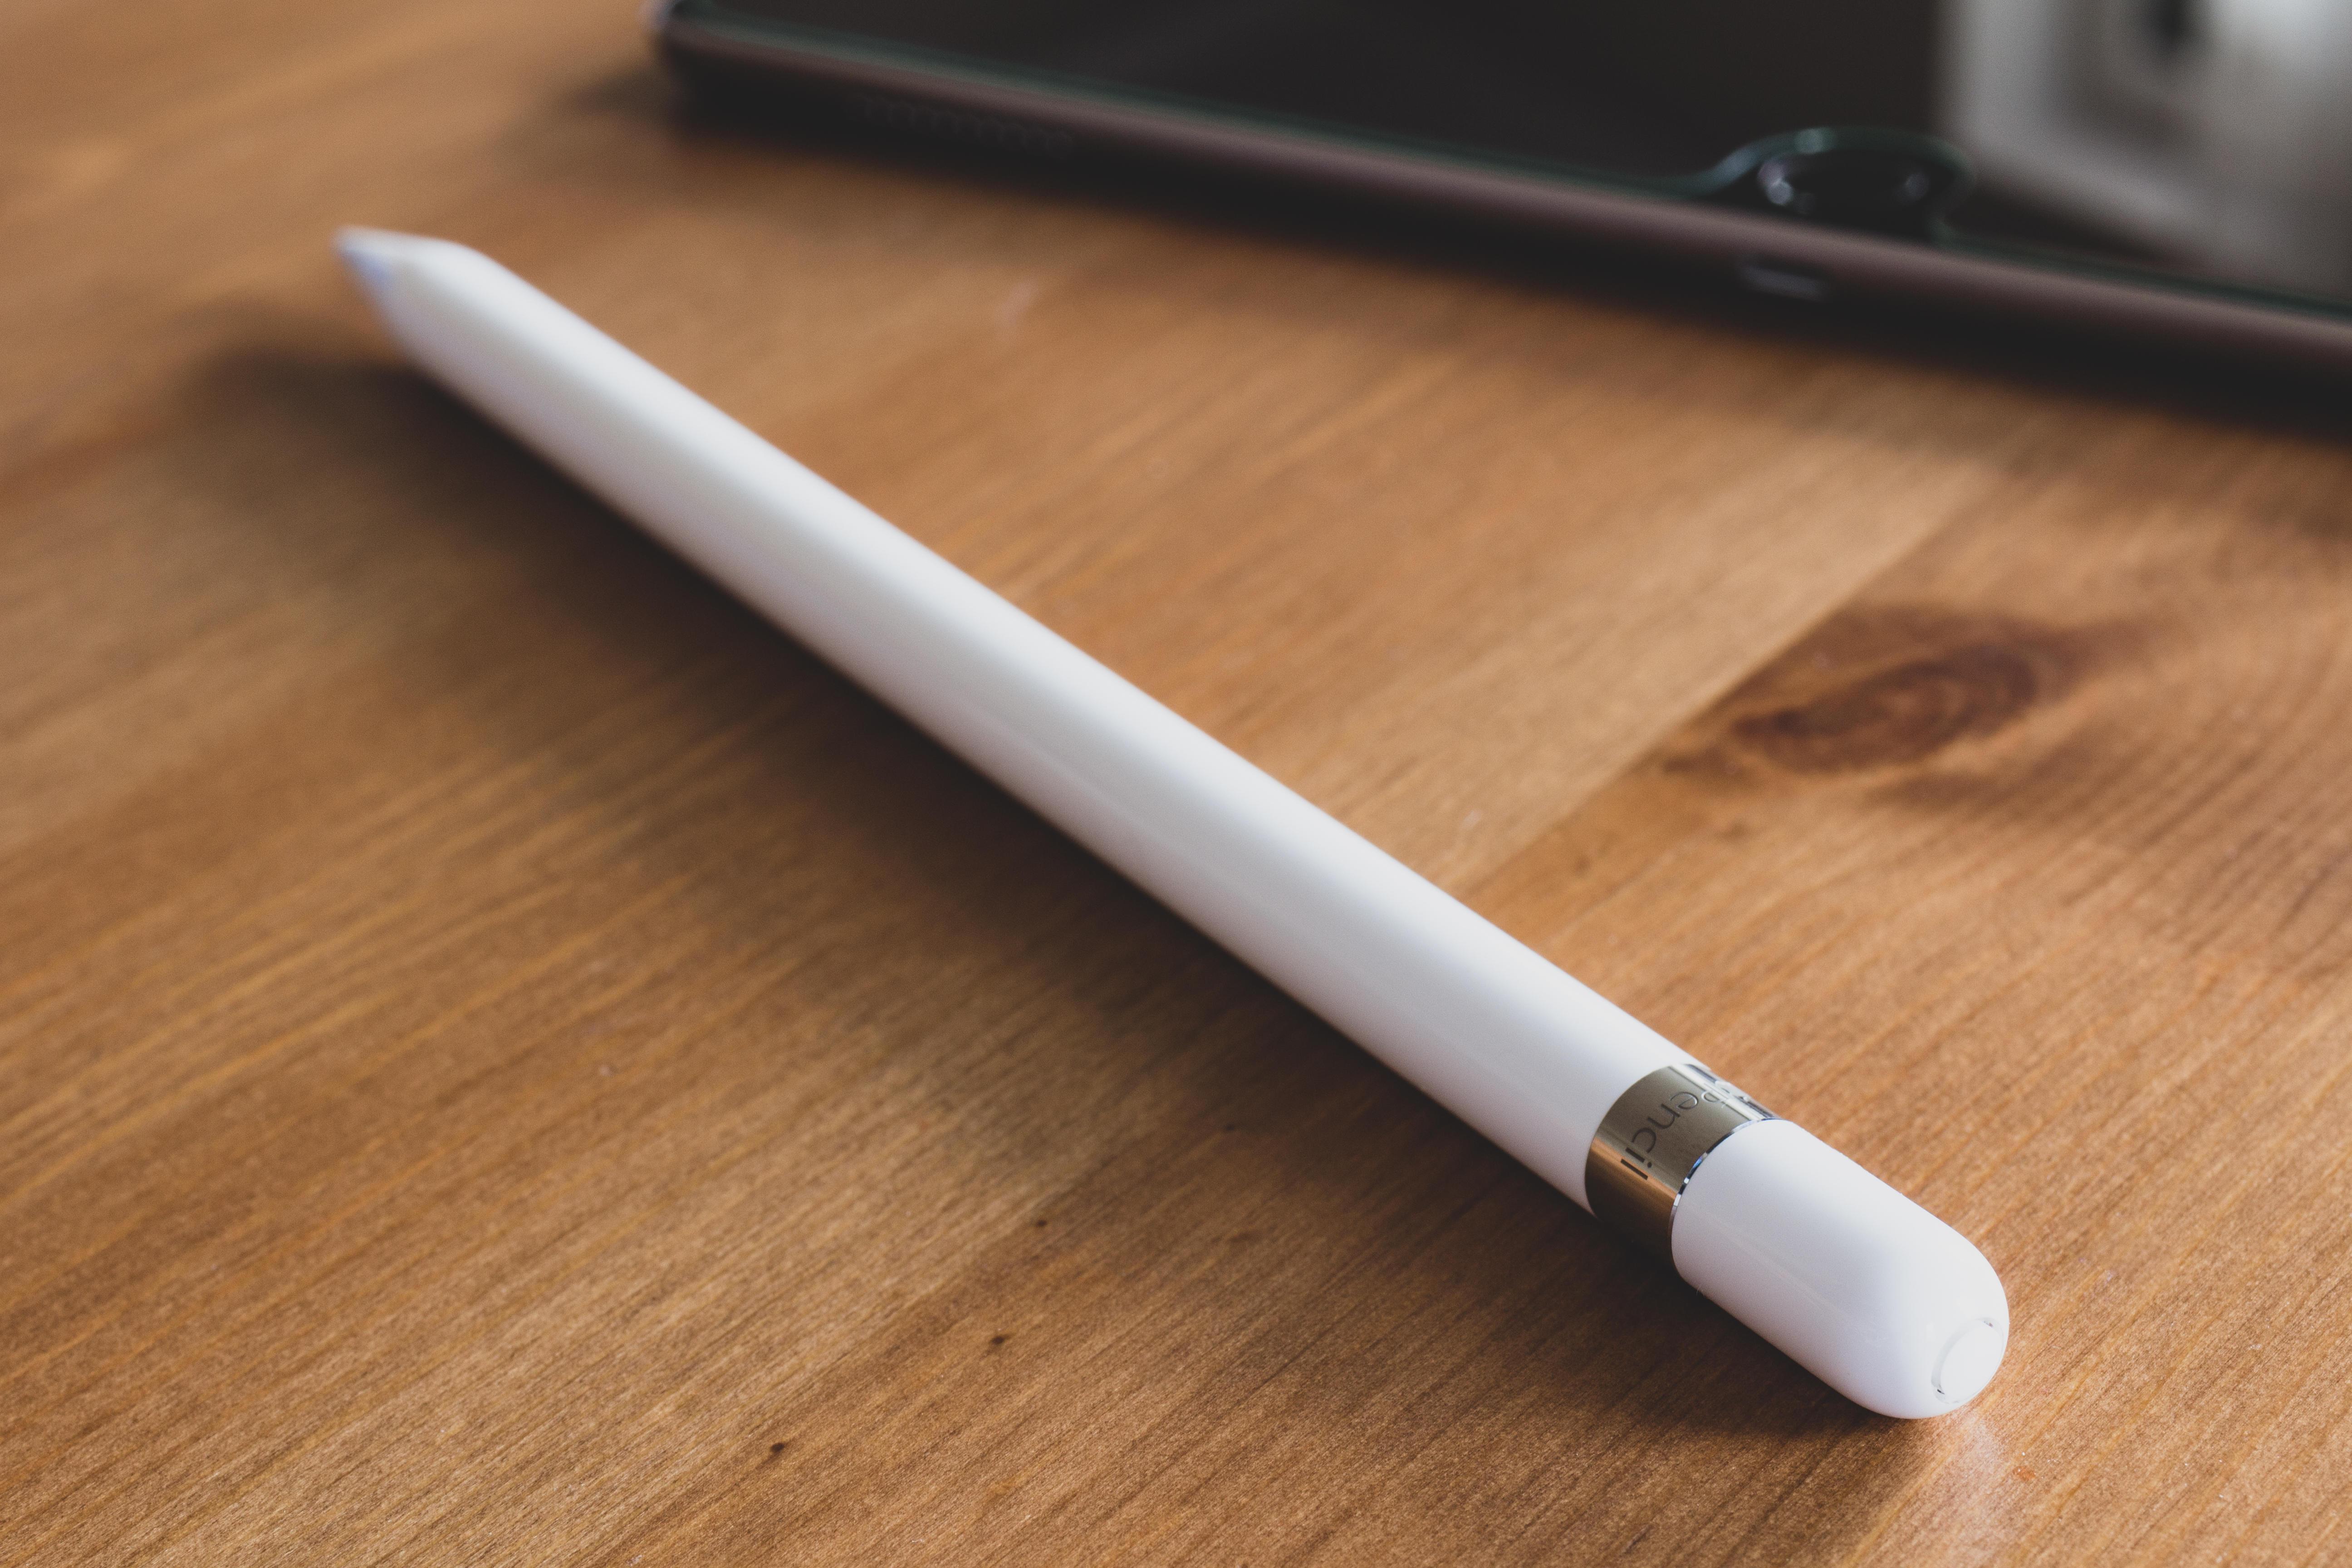   ال Apple قلم رصاص يعمل حاليًا فقط مع أجهزة iPad